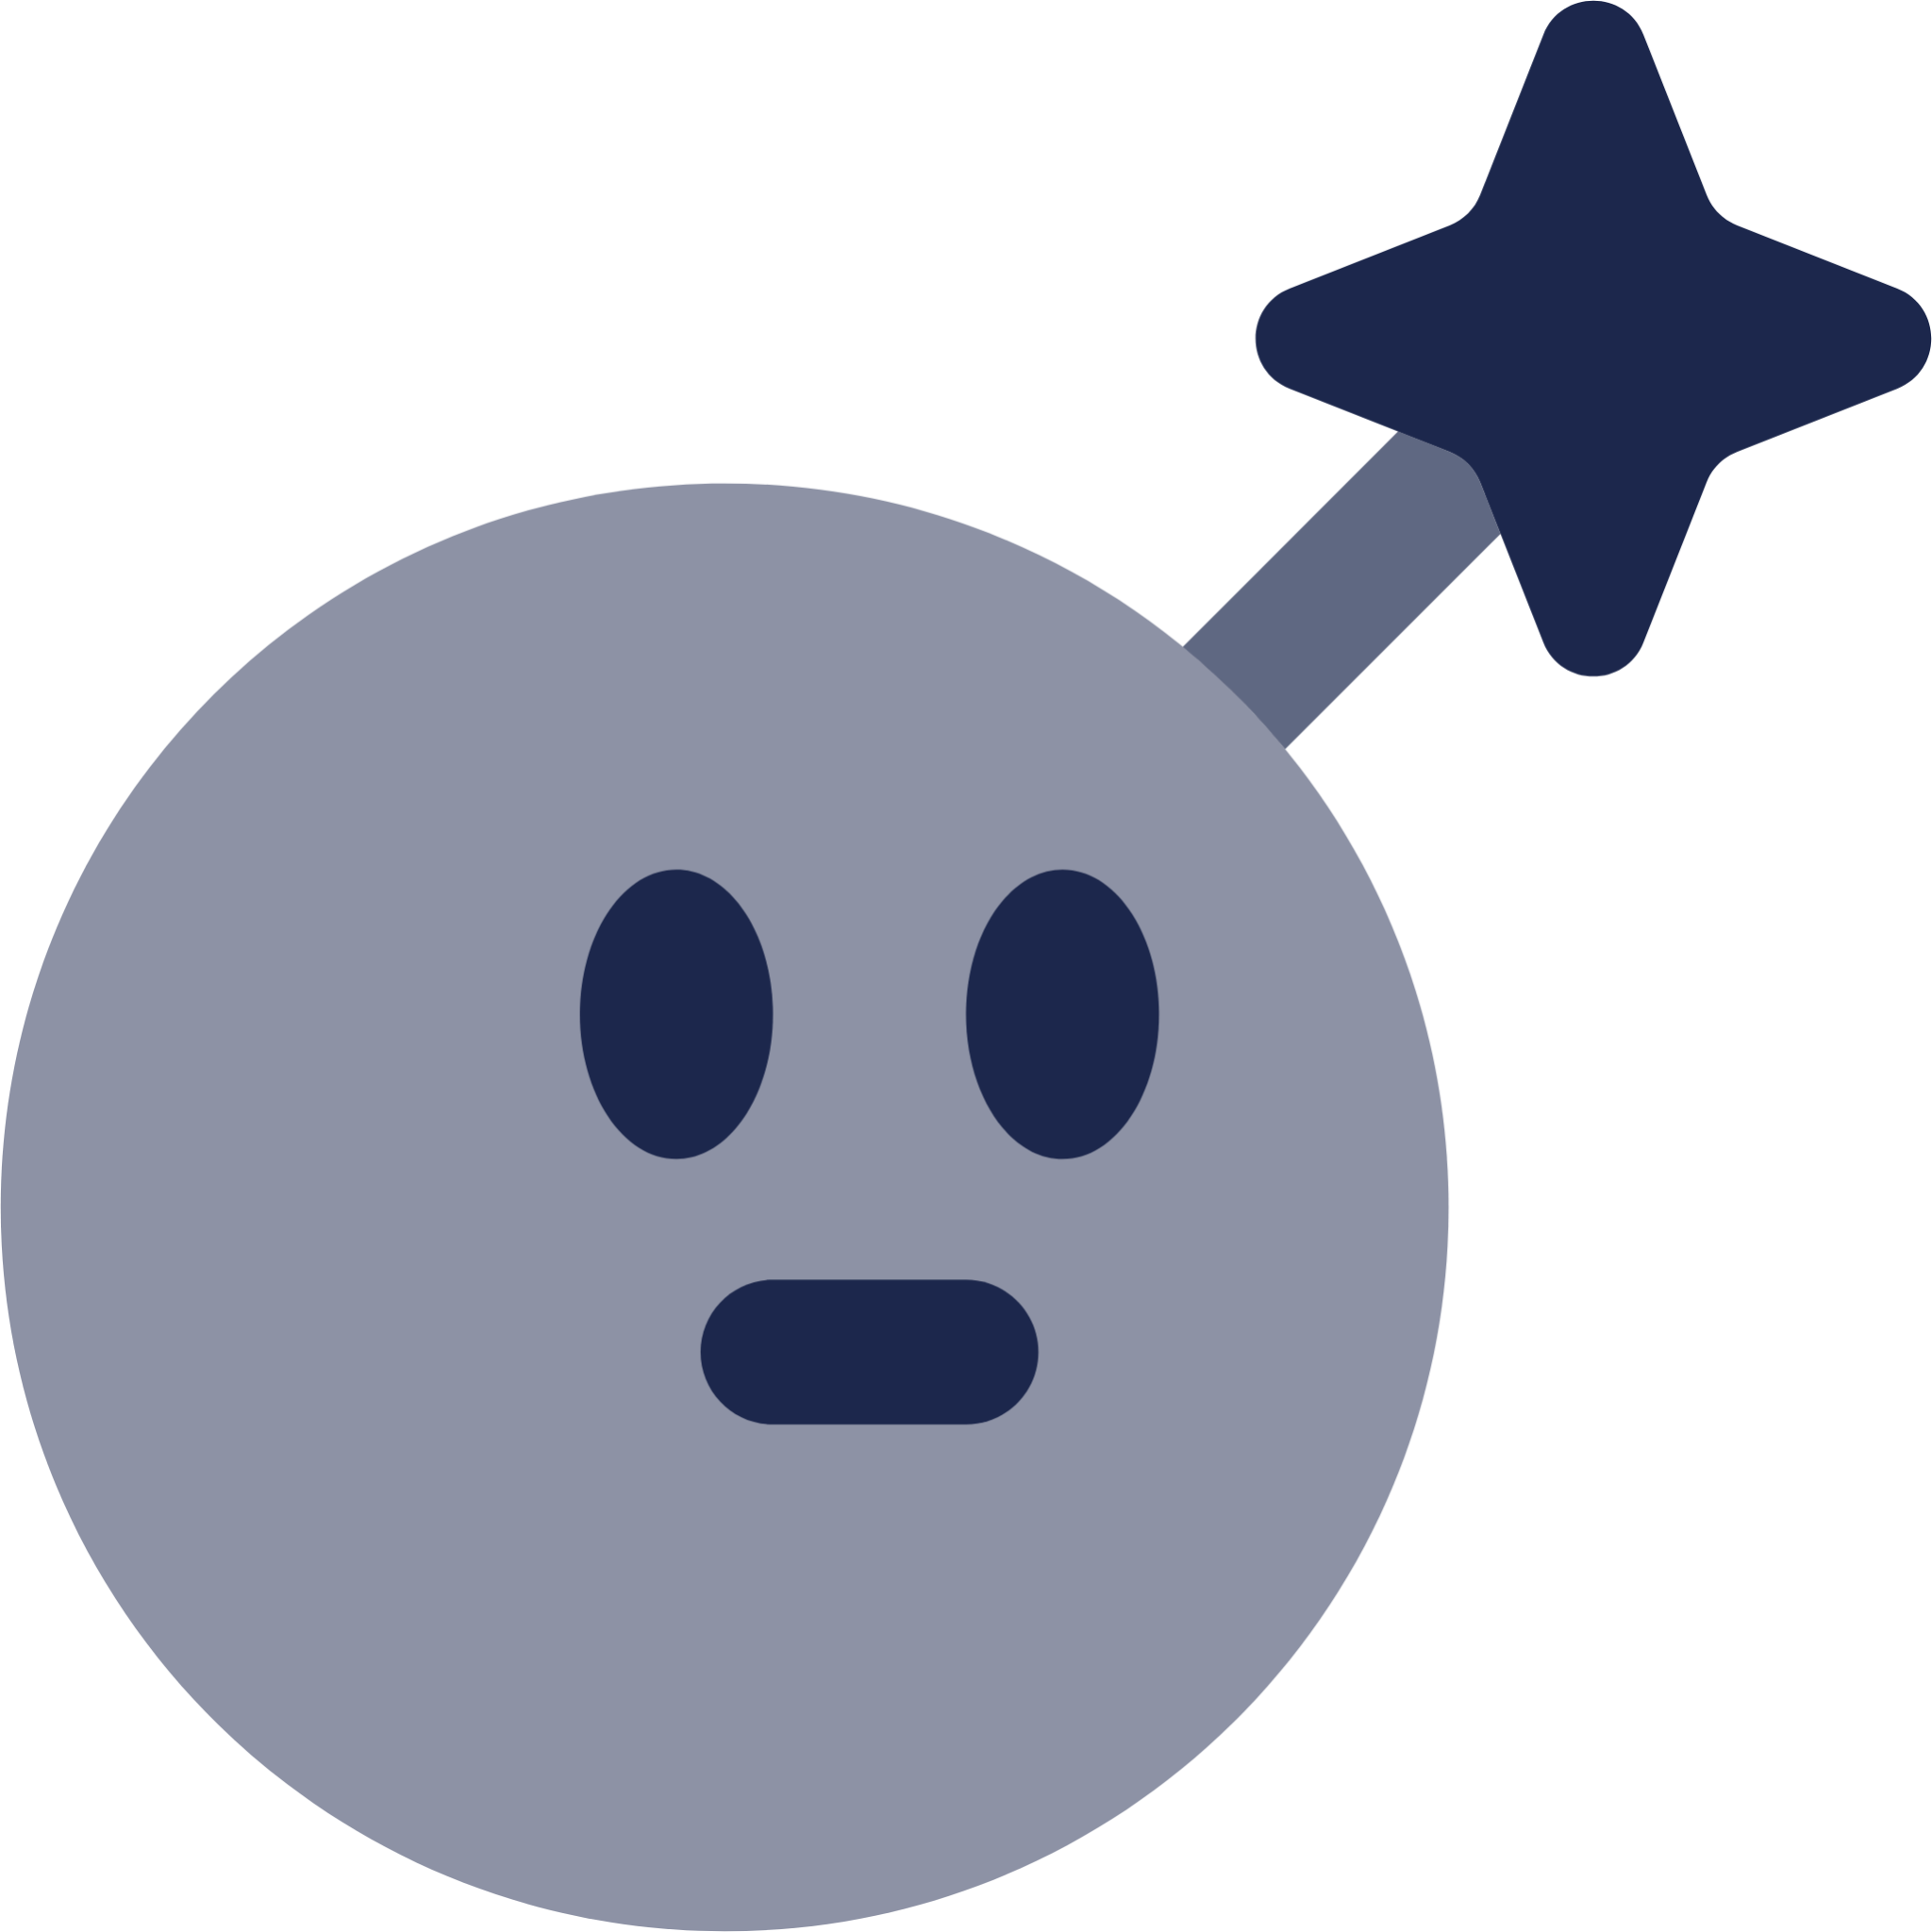 Bomb Emoji icon